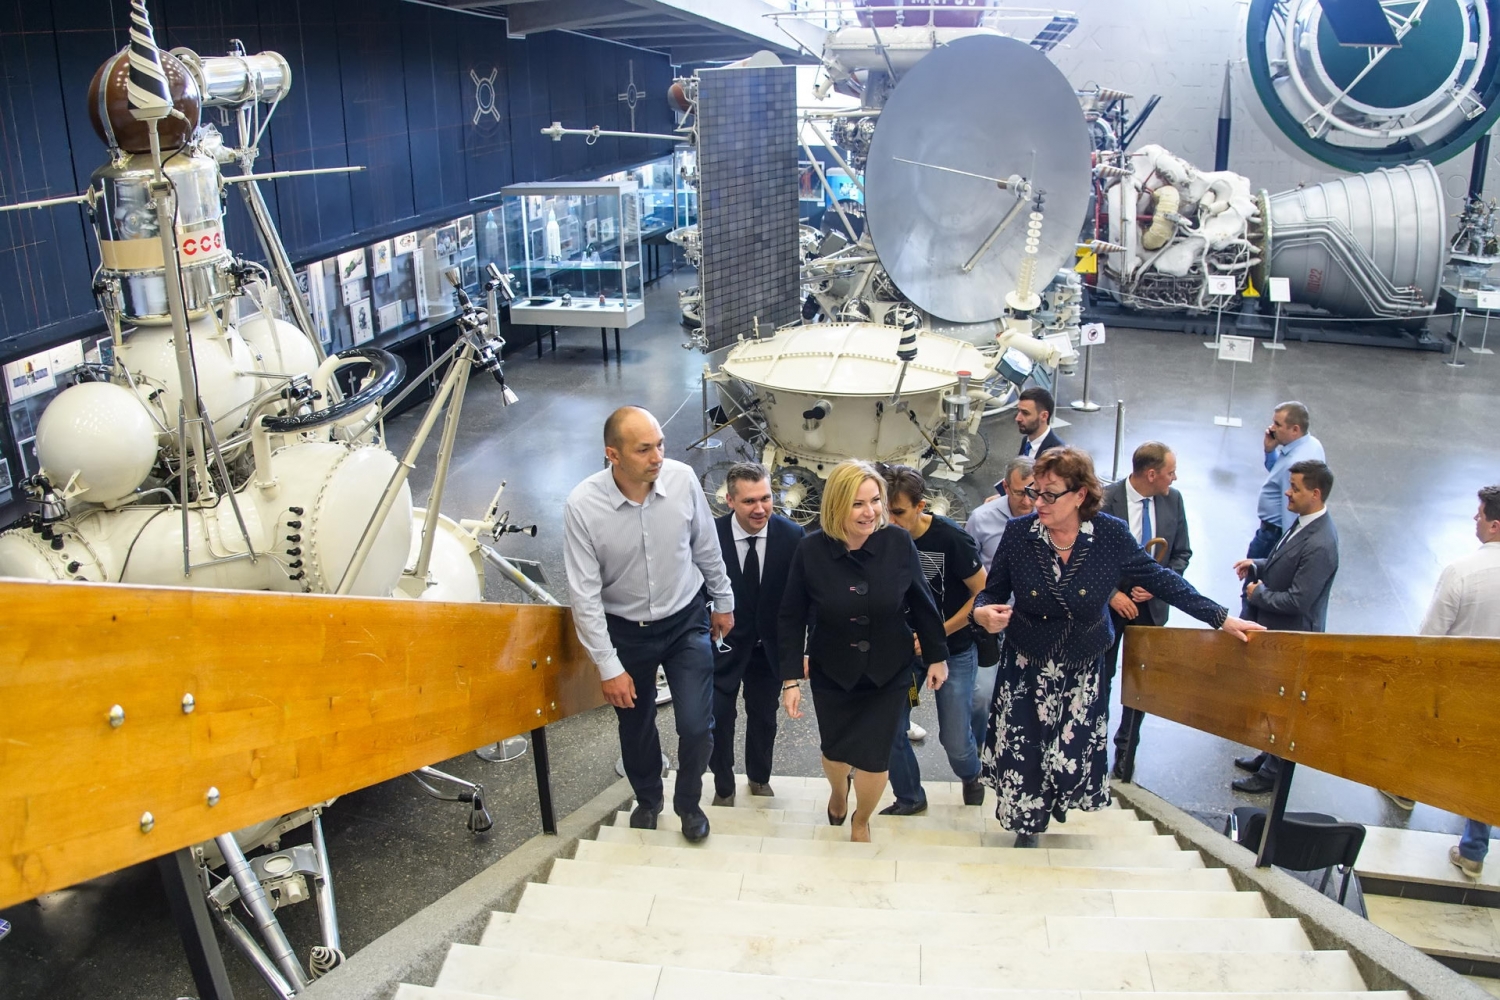 Названы сроки открытия второй очереди музея космонавтики